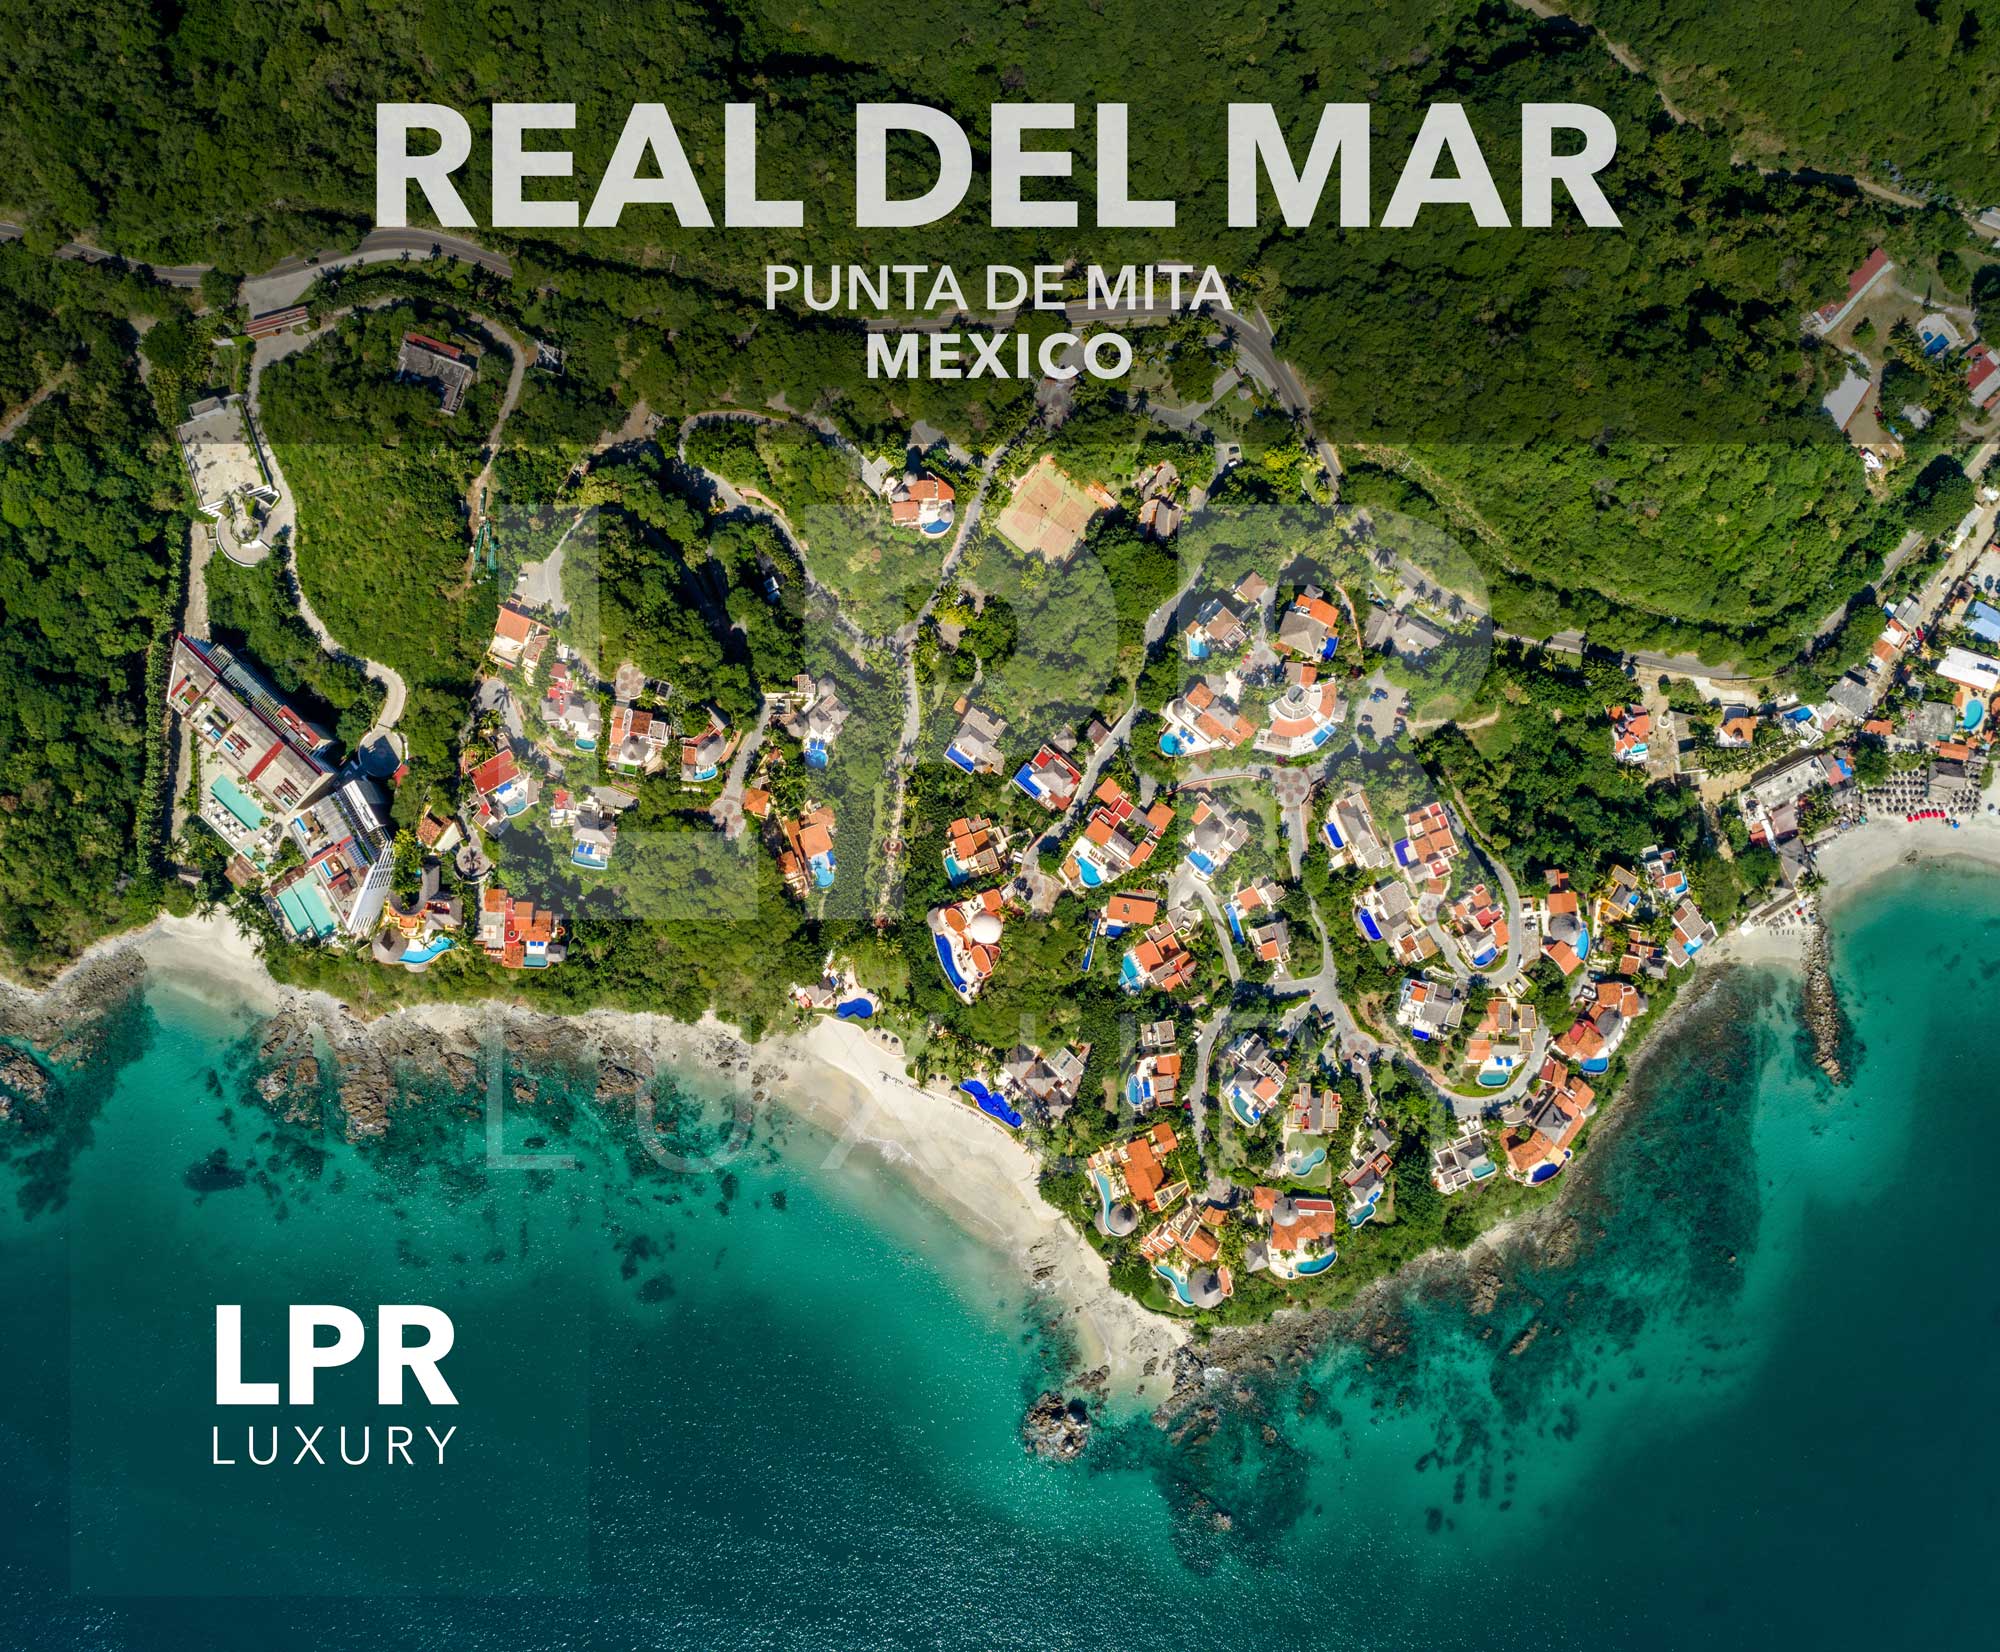 Real del Mar - North shore Puerto Vallarta luxury real estate and vacation rentals - Riviera Nayarit, Mexico